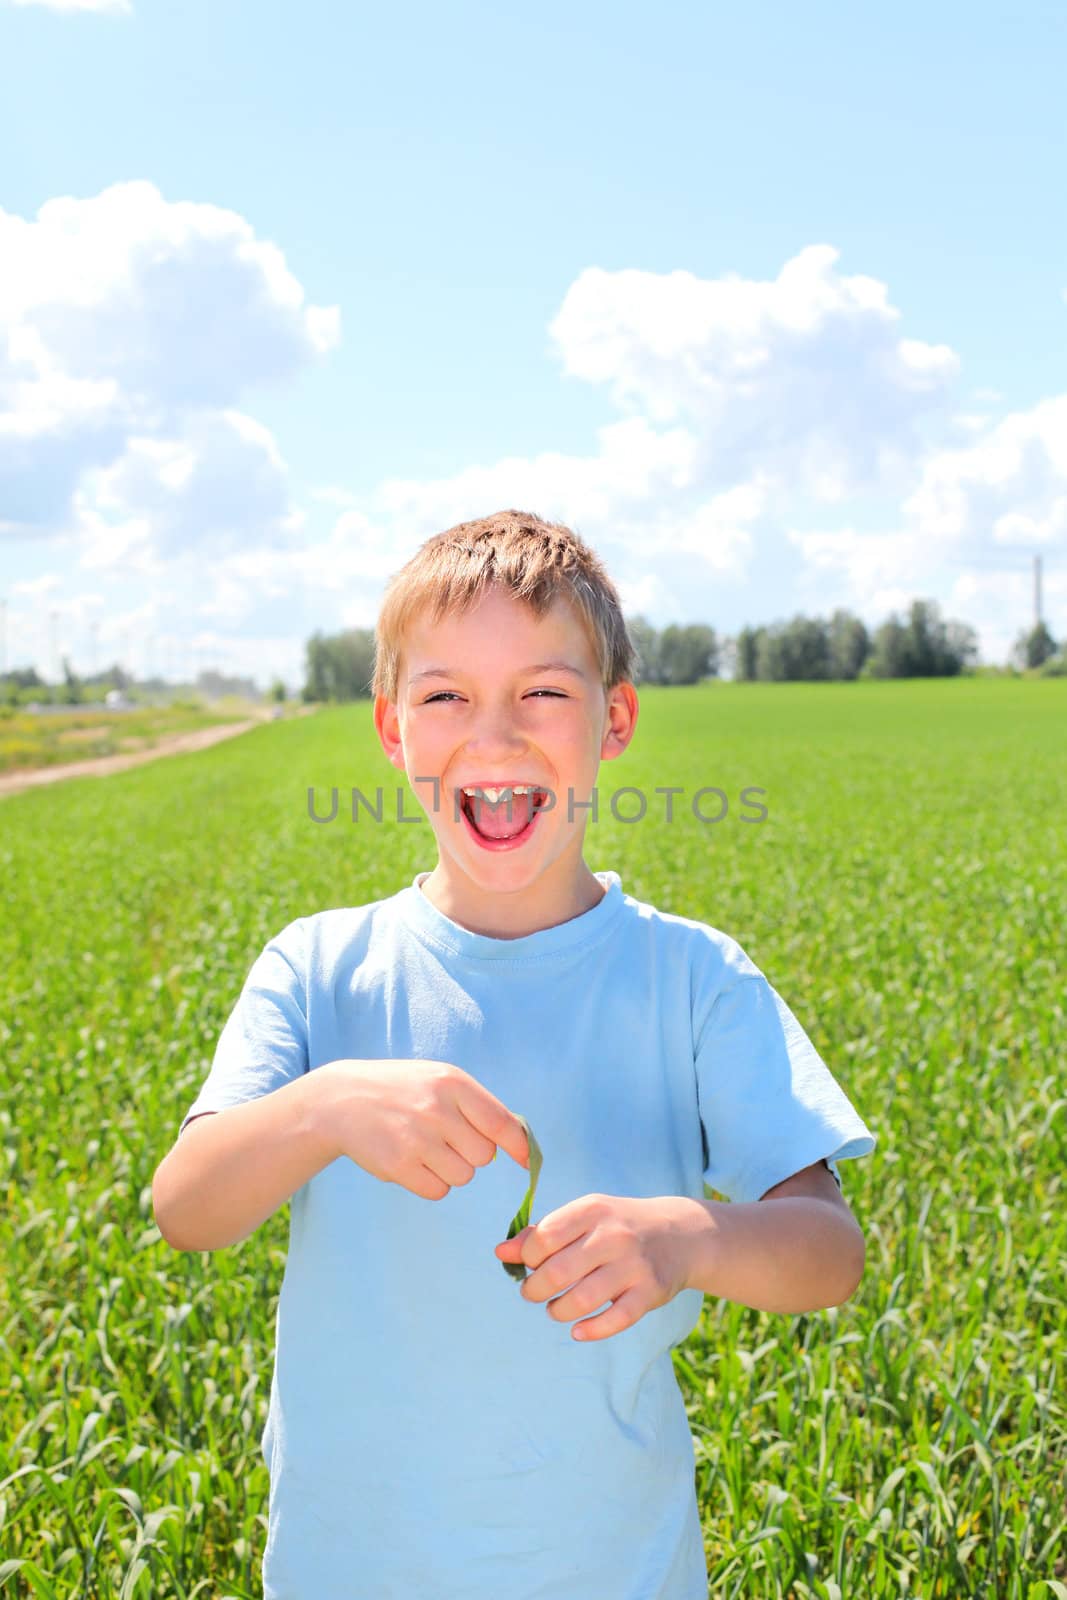 happy boy in the summer field